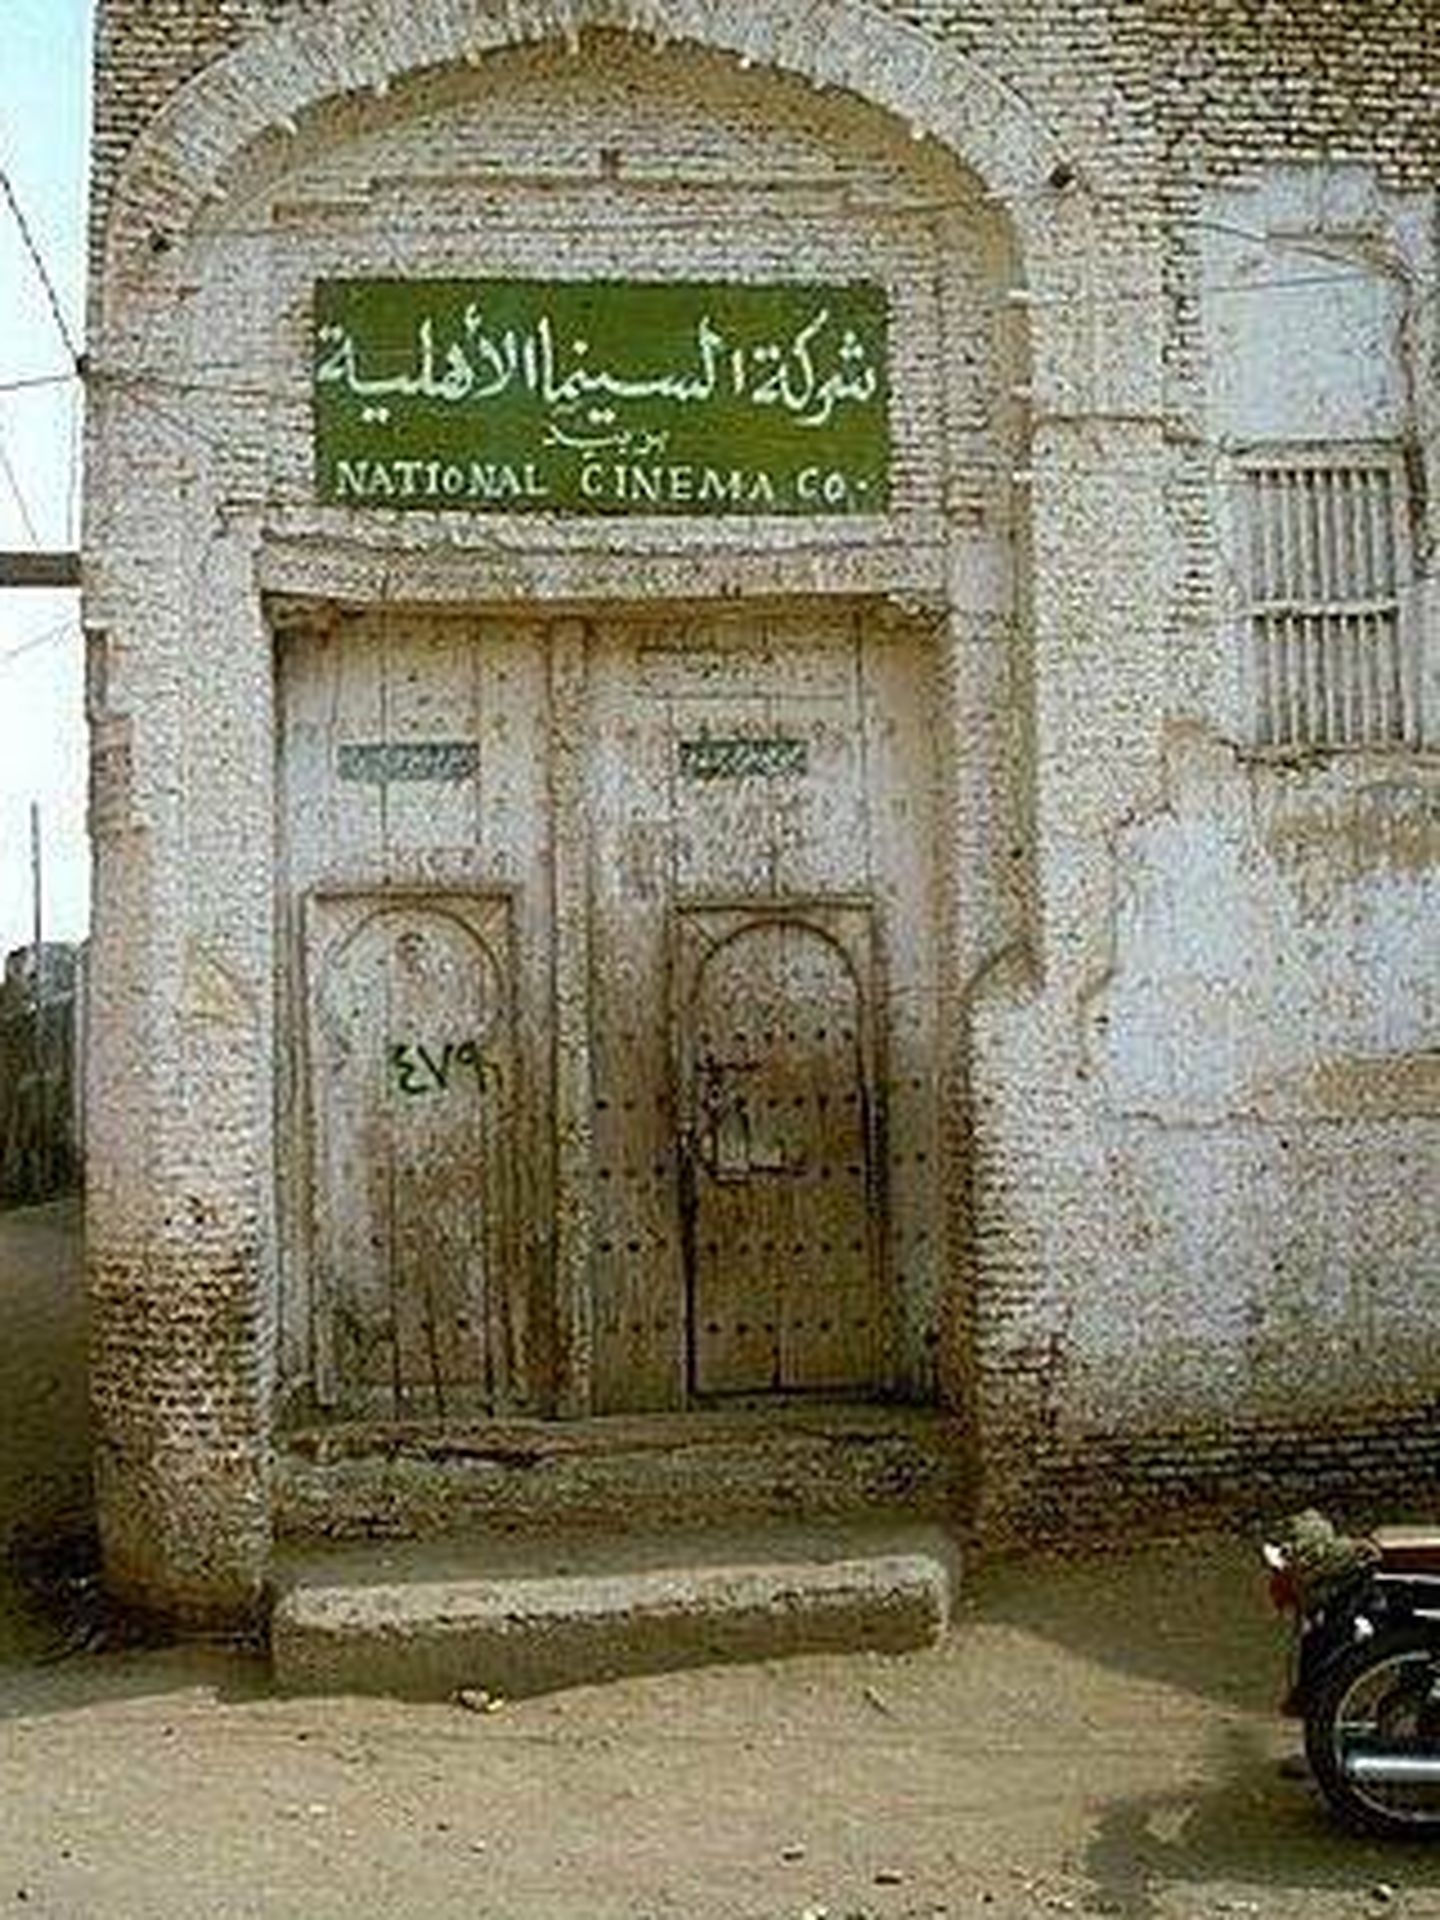 Fachada del National Cinema, la única sala de cine que queda abierta en Yemen y a la que no pueden entrar mujeres. (Cedida)